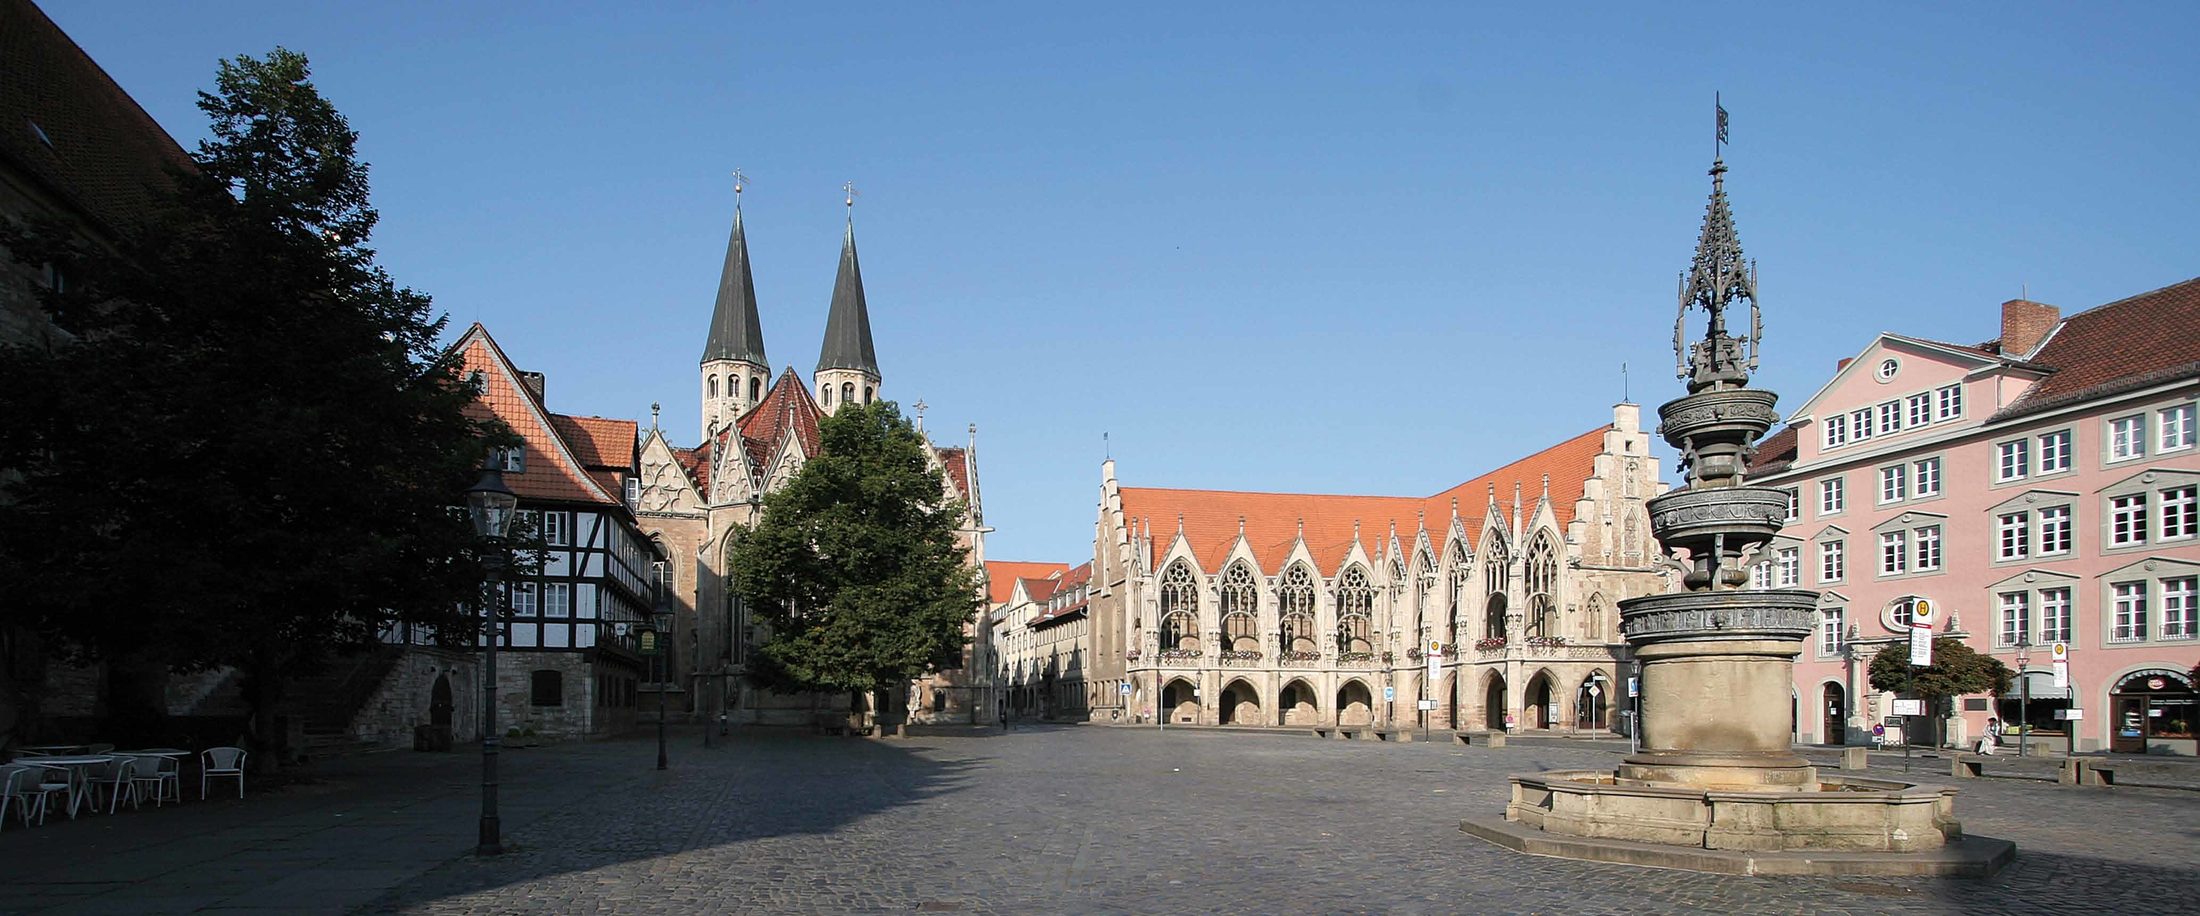 Der Altstadtmarkt – seit dem Mittelalter bis heute ein Mittelpunkt des öffentlichen Lebens in Braunschweig.